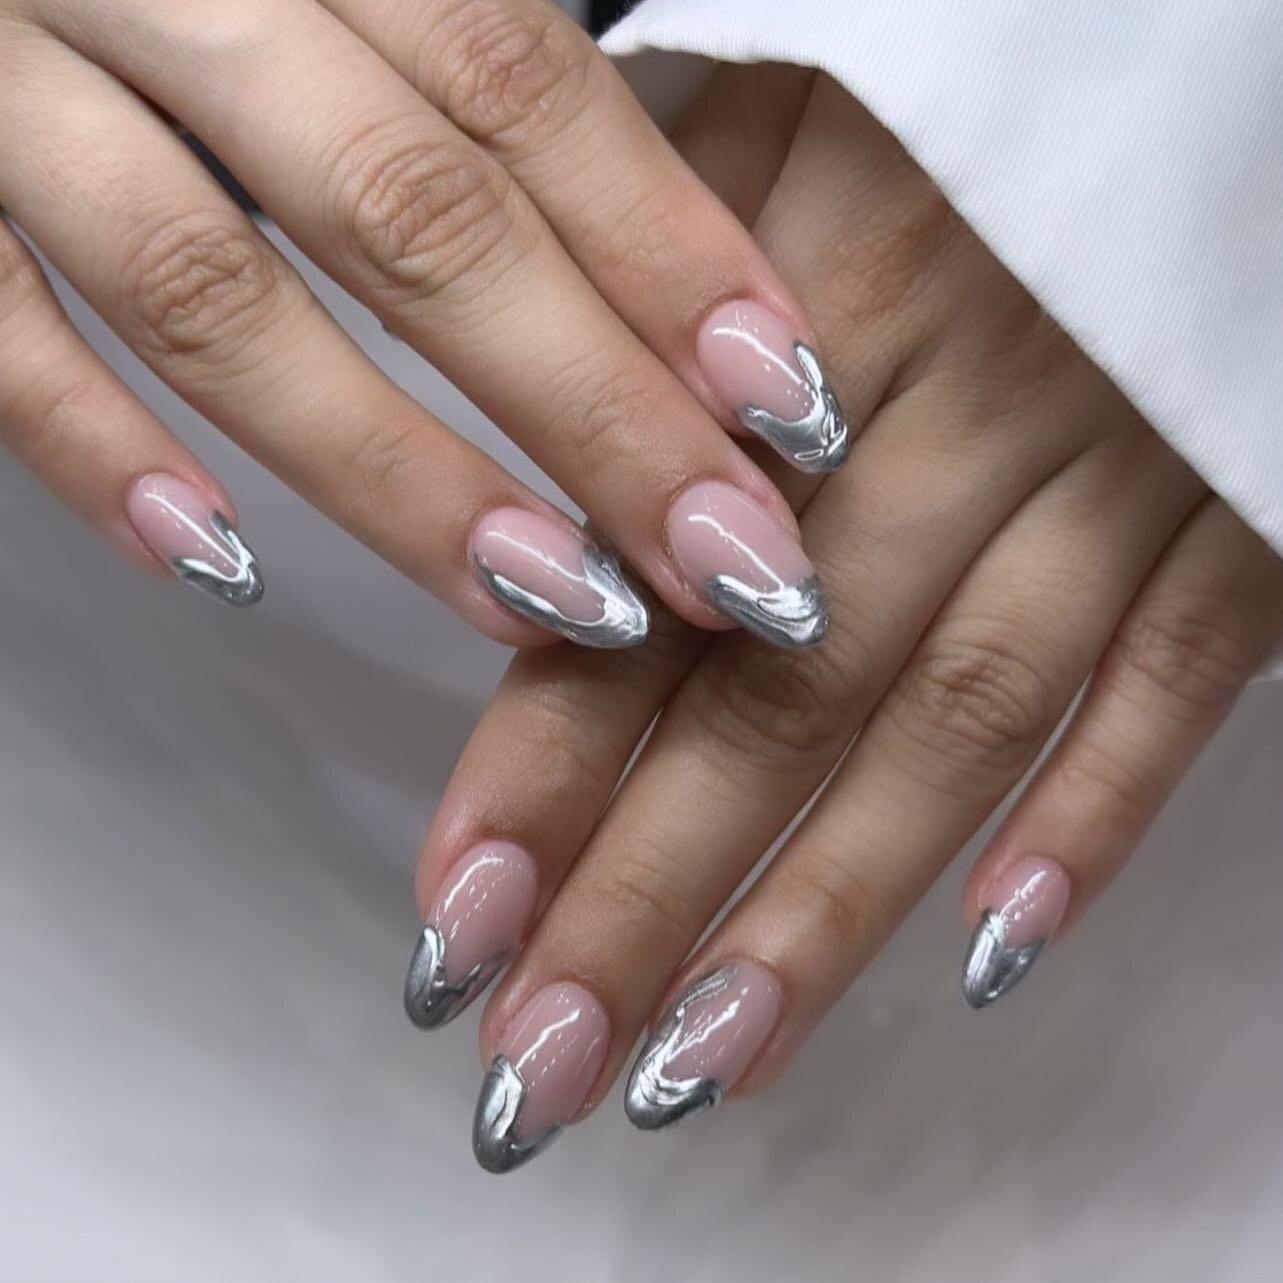 #silverchromenails #nailsnailsnails #nailsart #bechicnails #seattlenails #bellevuenails #nailsinspiration